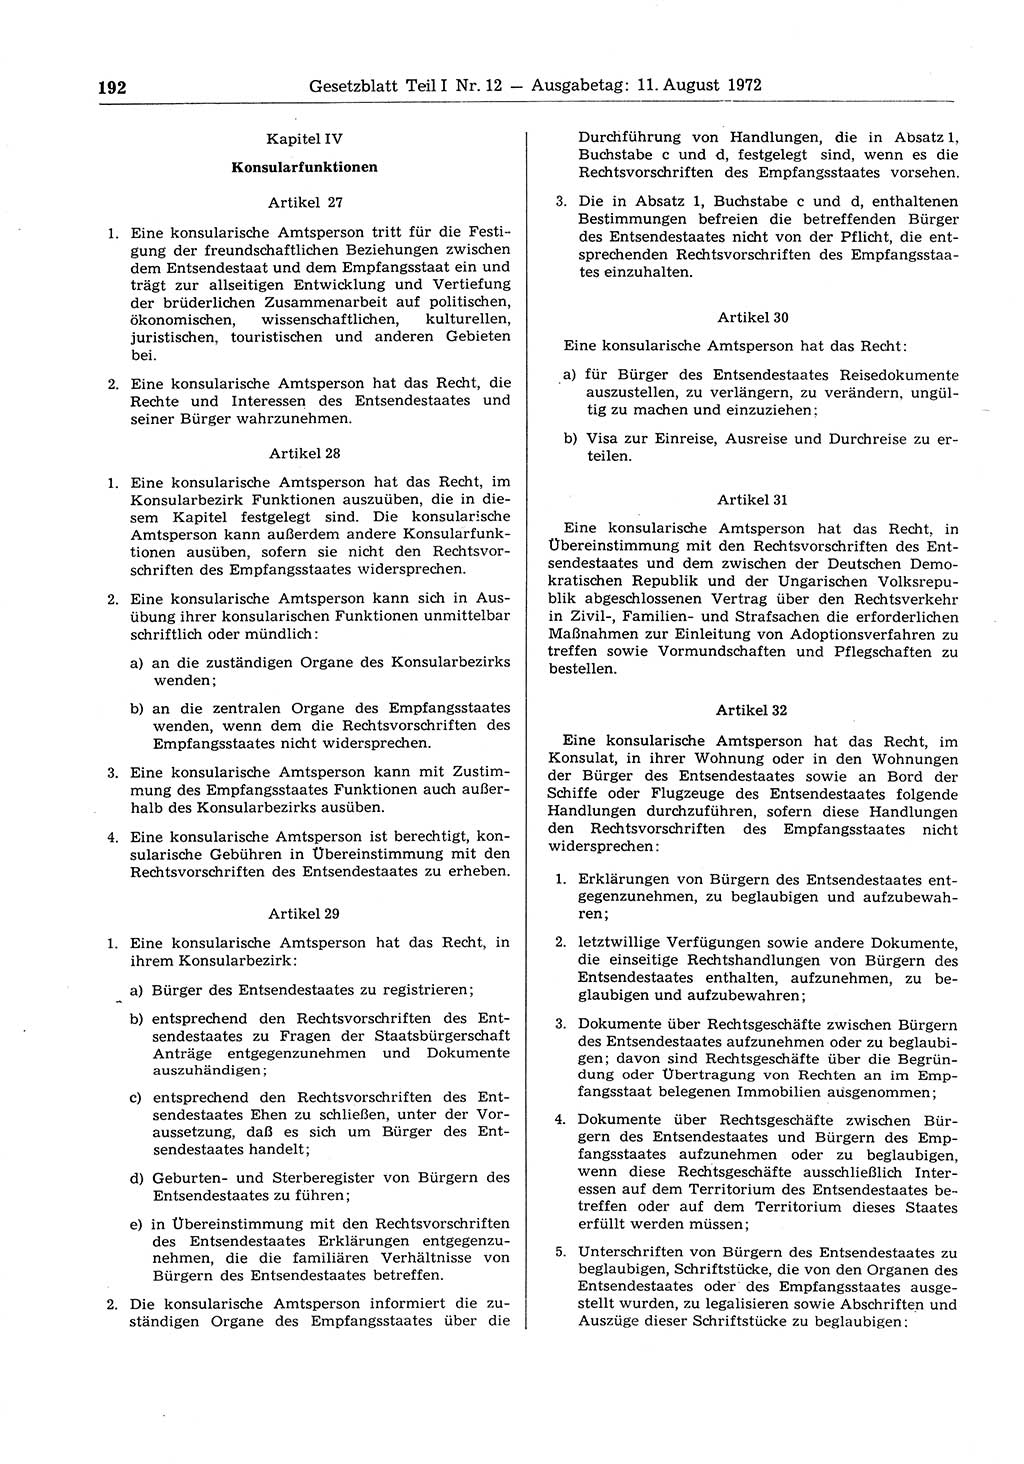 Gesetzblatt (GBl.) der Deutschen Demokratischen Republik (DDR) Teil Ⅰ 1972, Seite 192 (GBl. DDR Ⅰ 1972, S. 192)